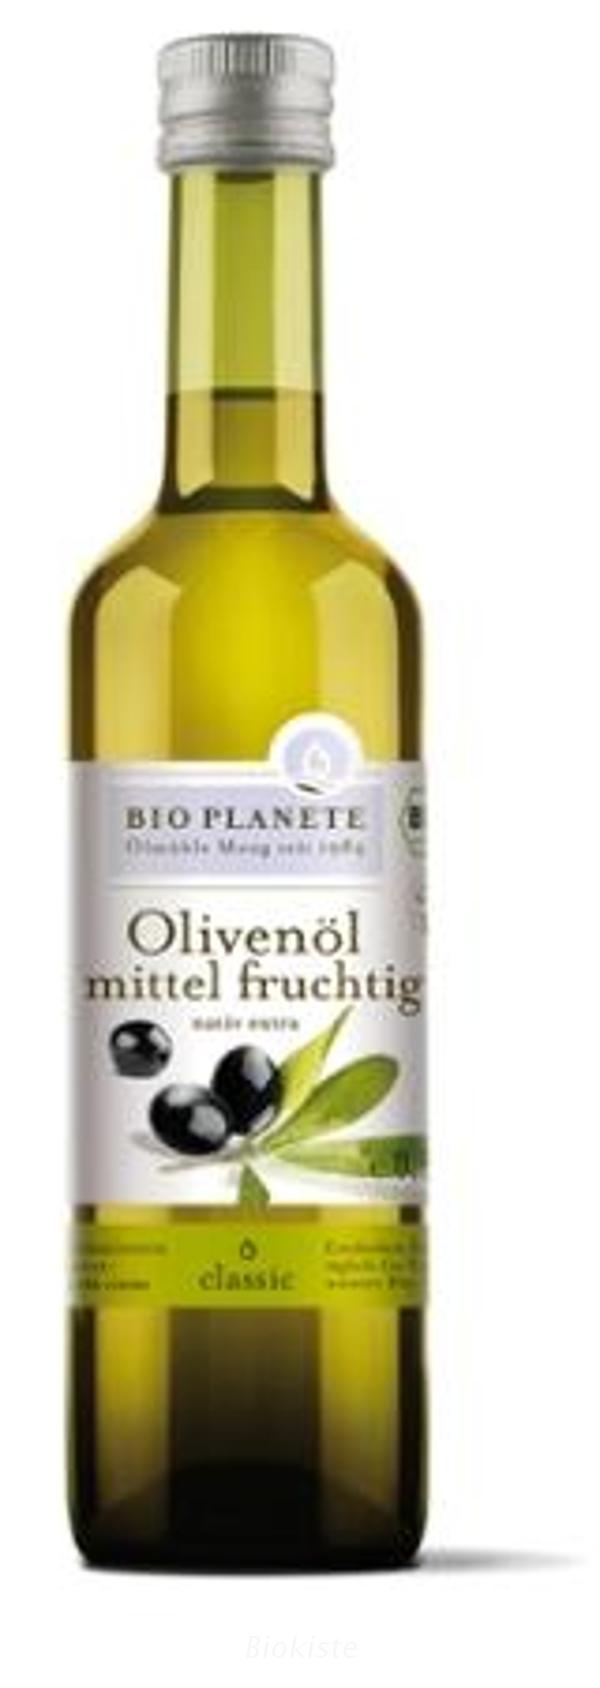 Produktfoto zu Olivenöl mittel-fruchtig 0,5l